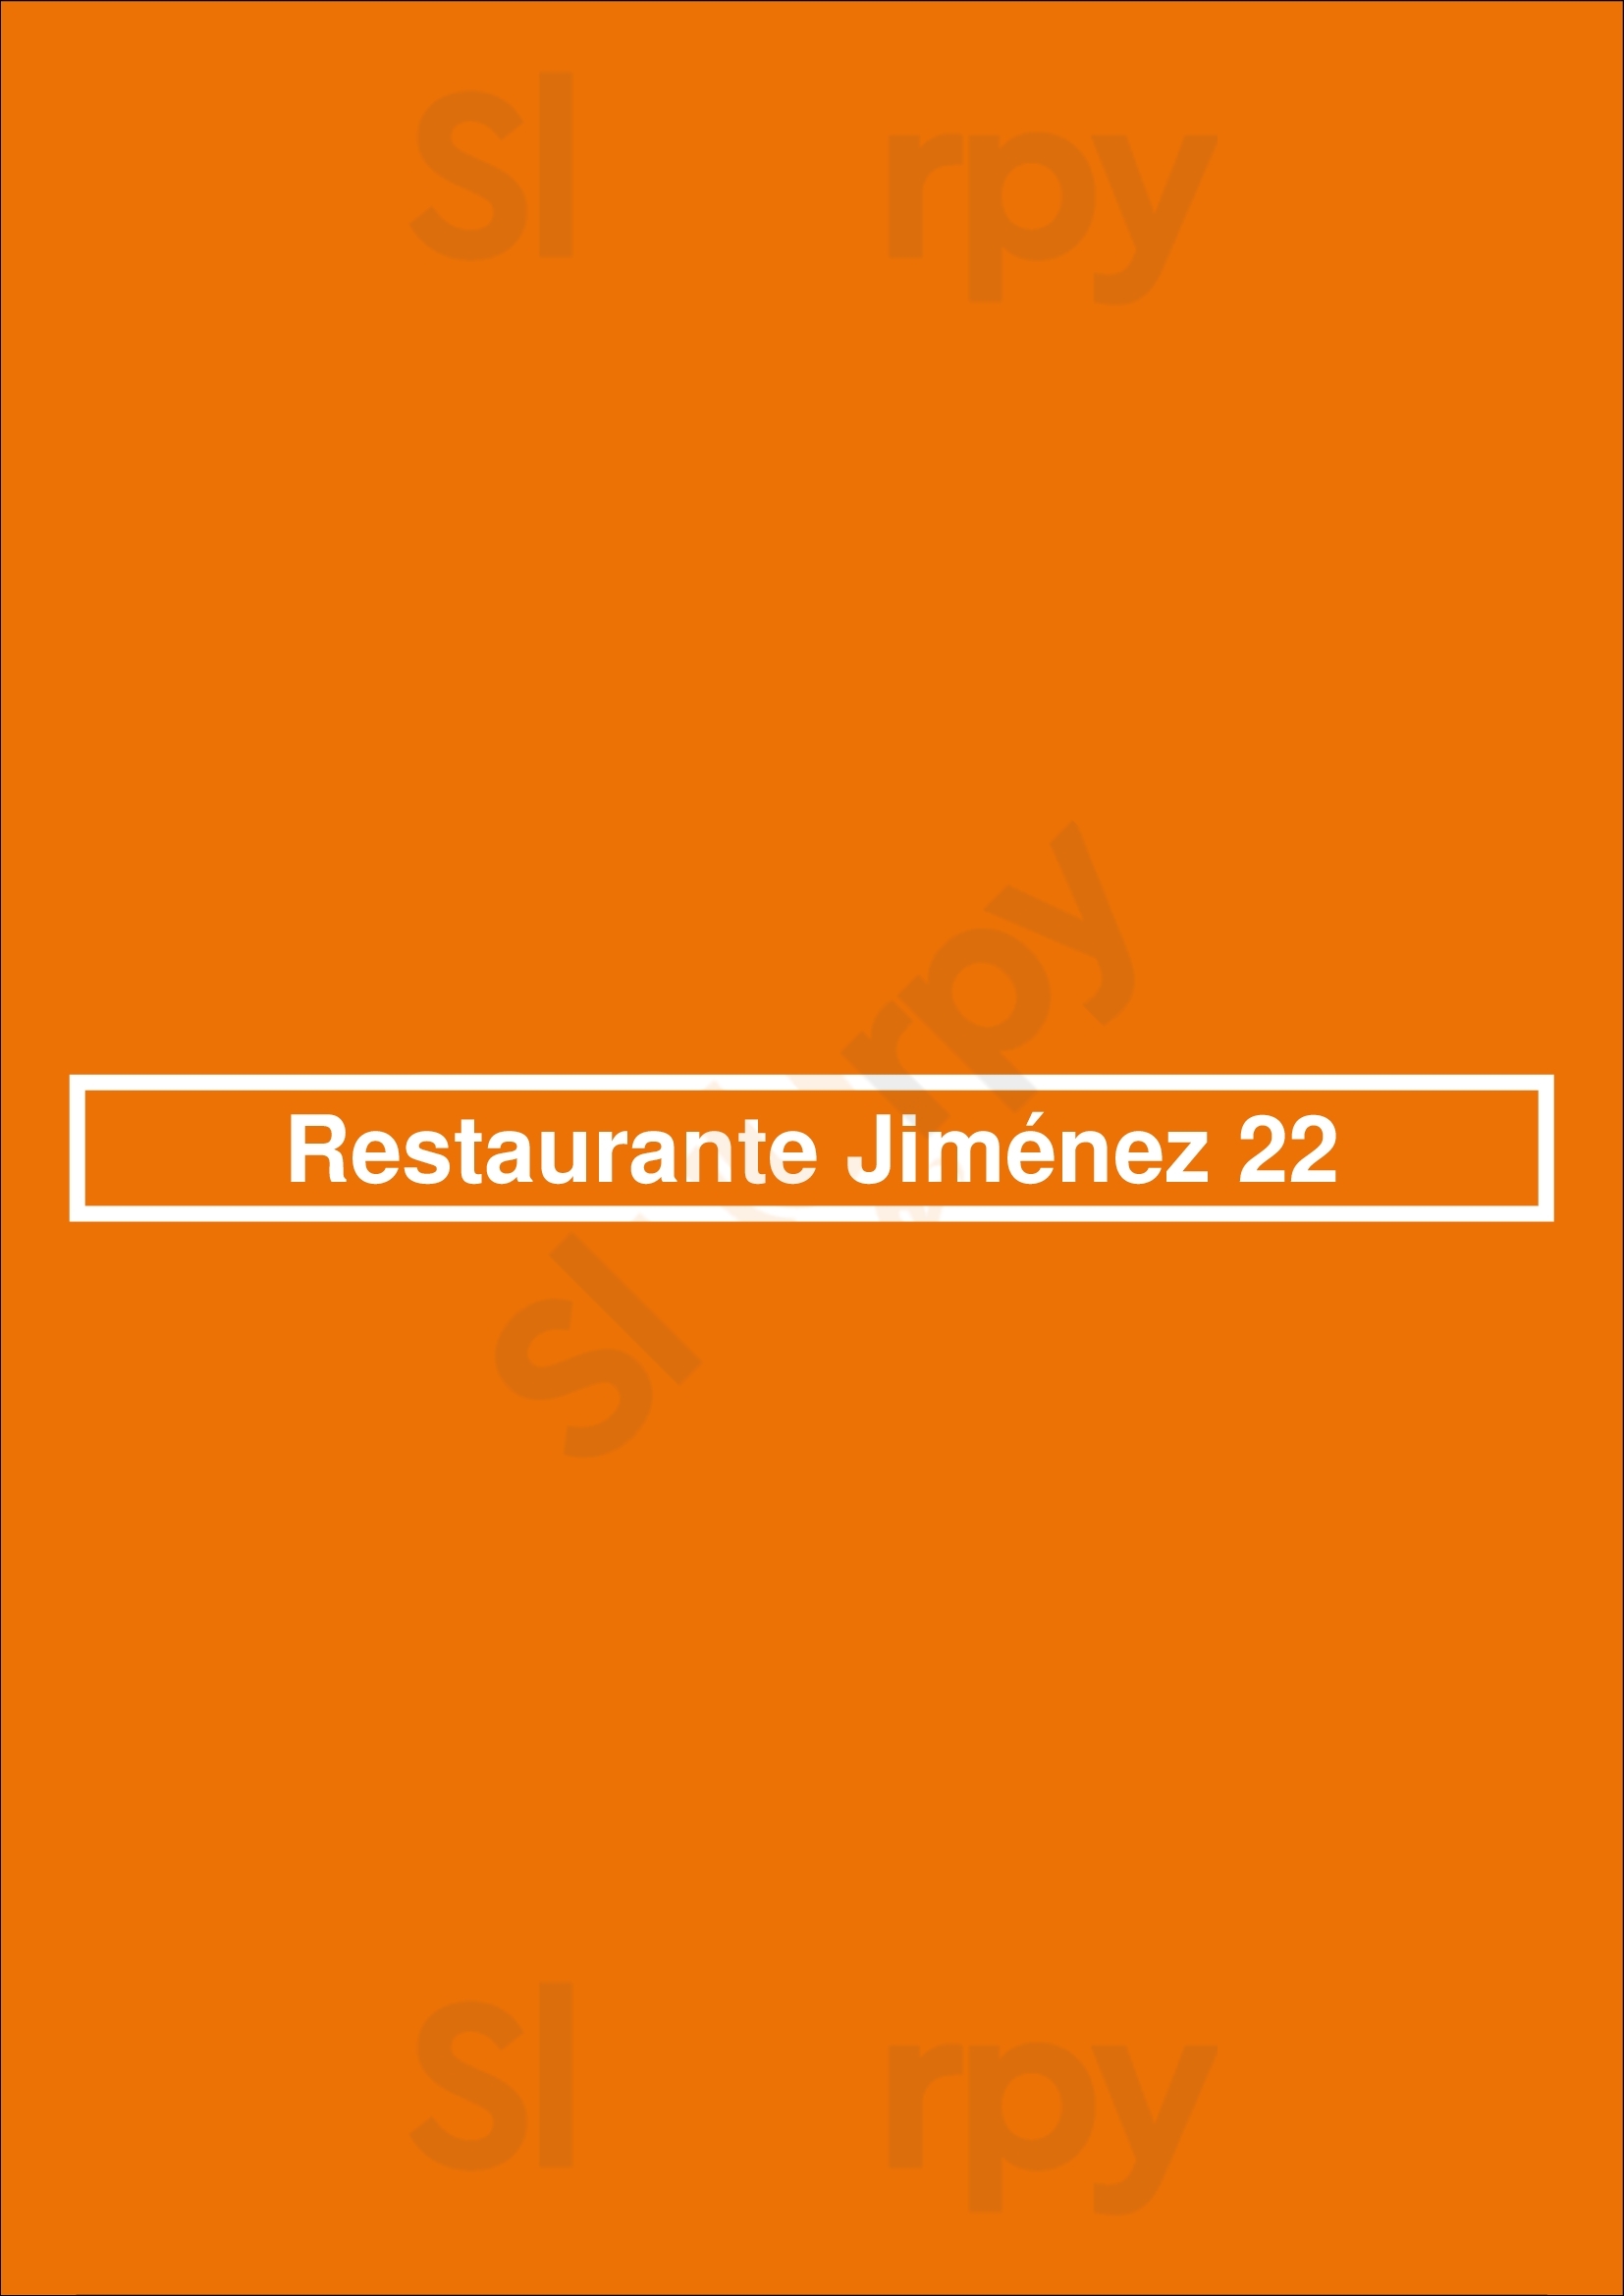 Restaurante Jiménez 22 Madrid Menu - 1